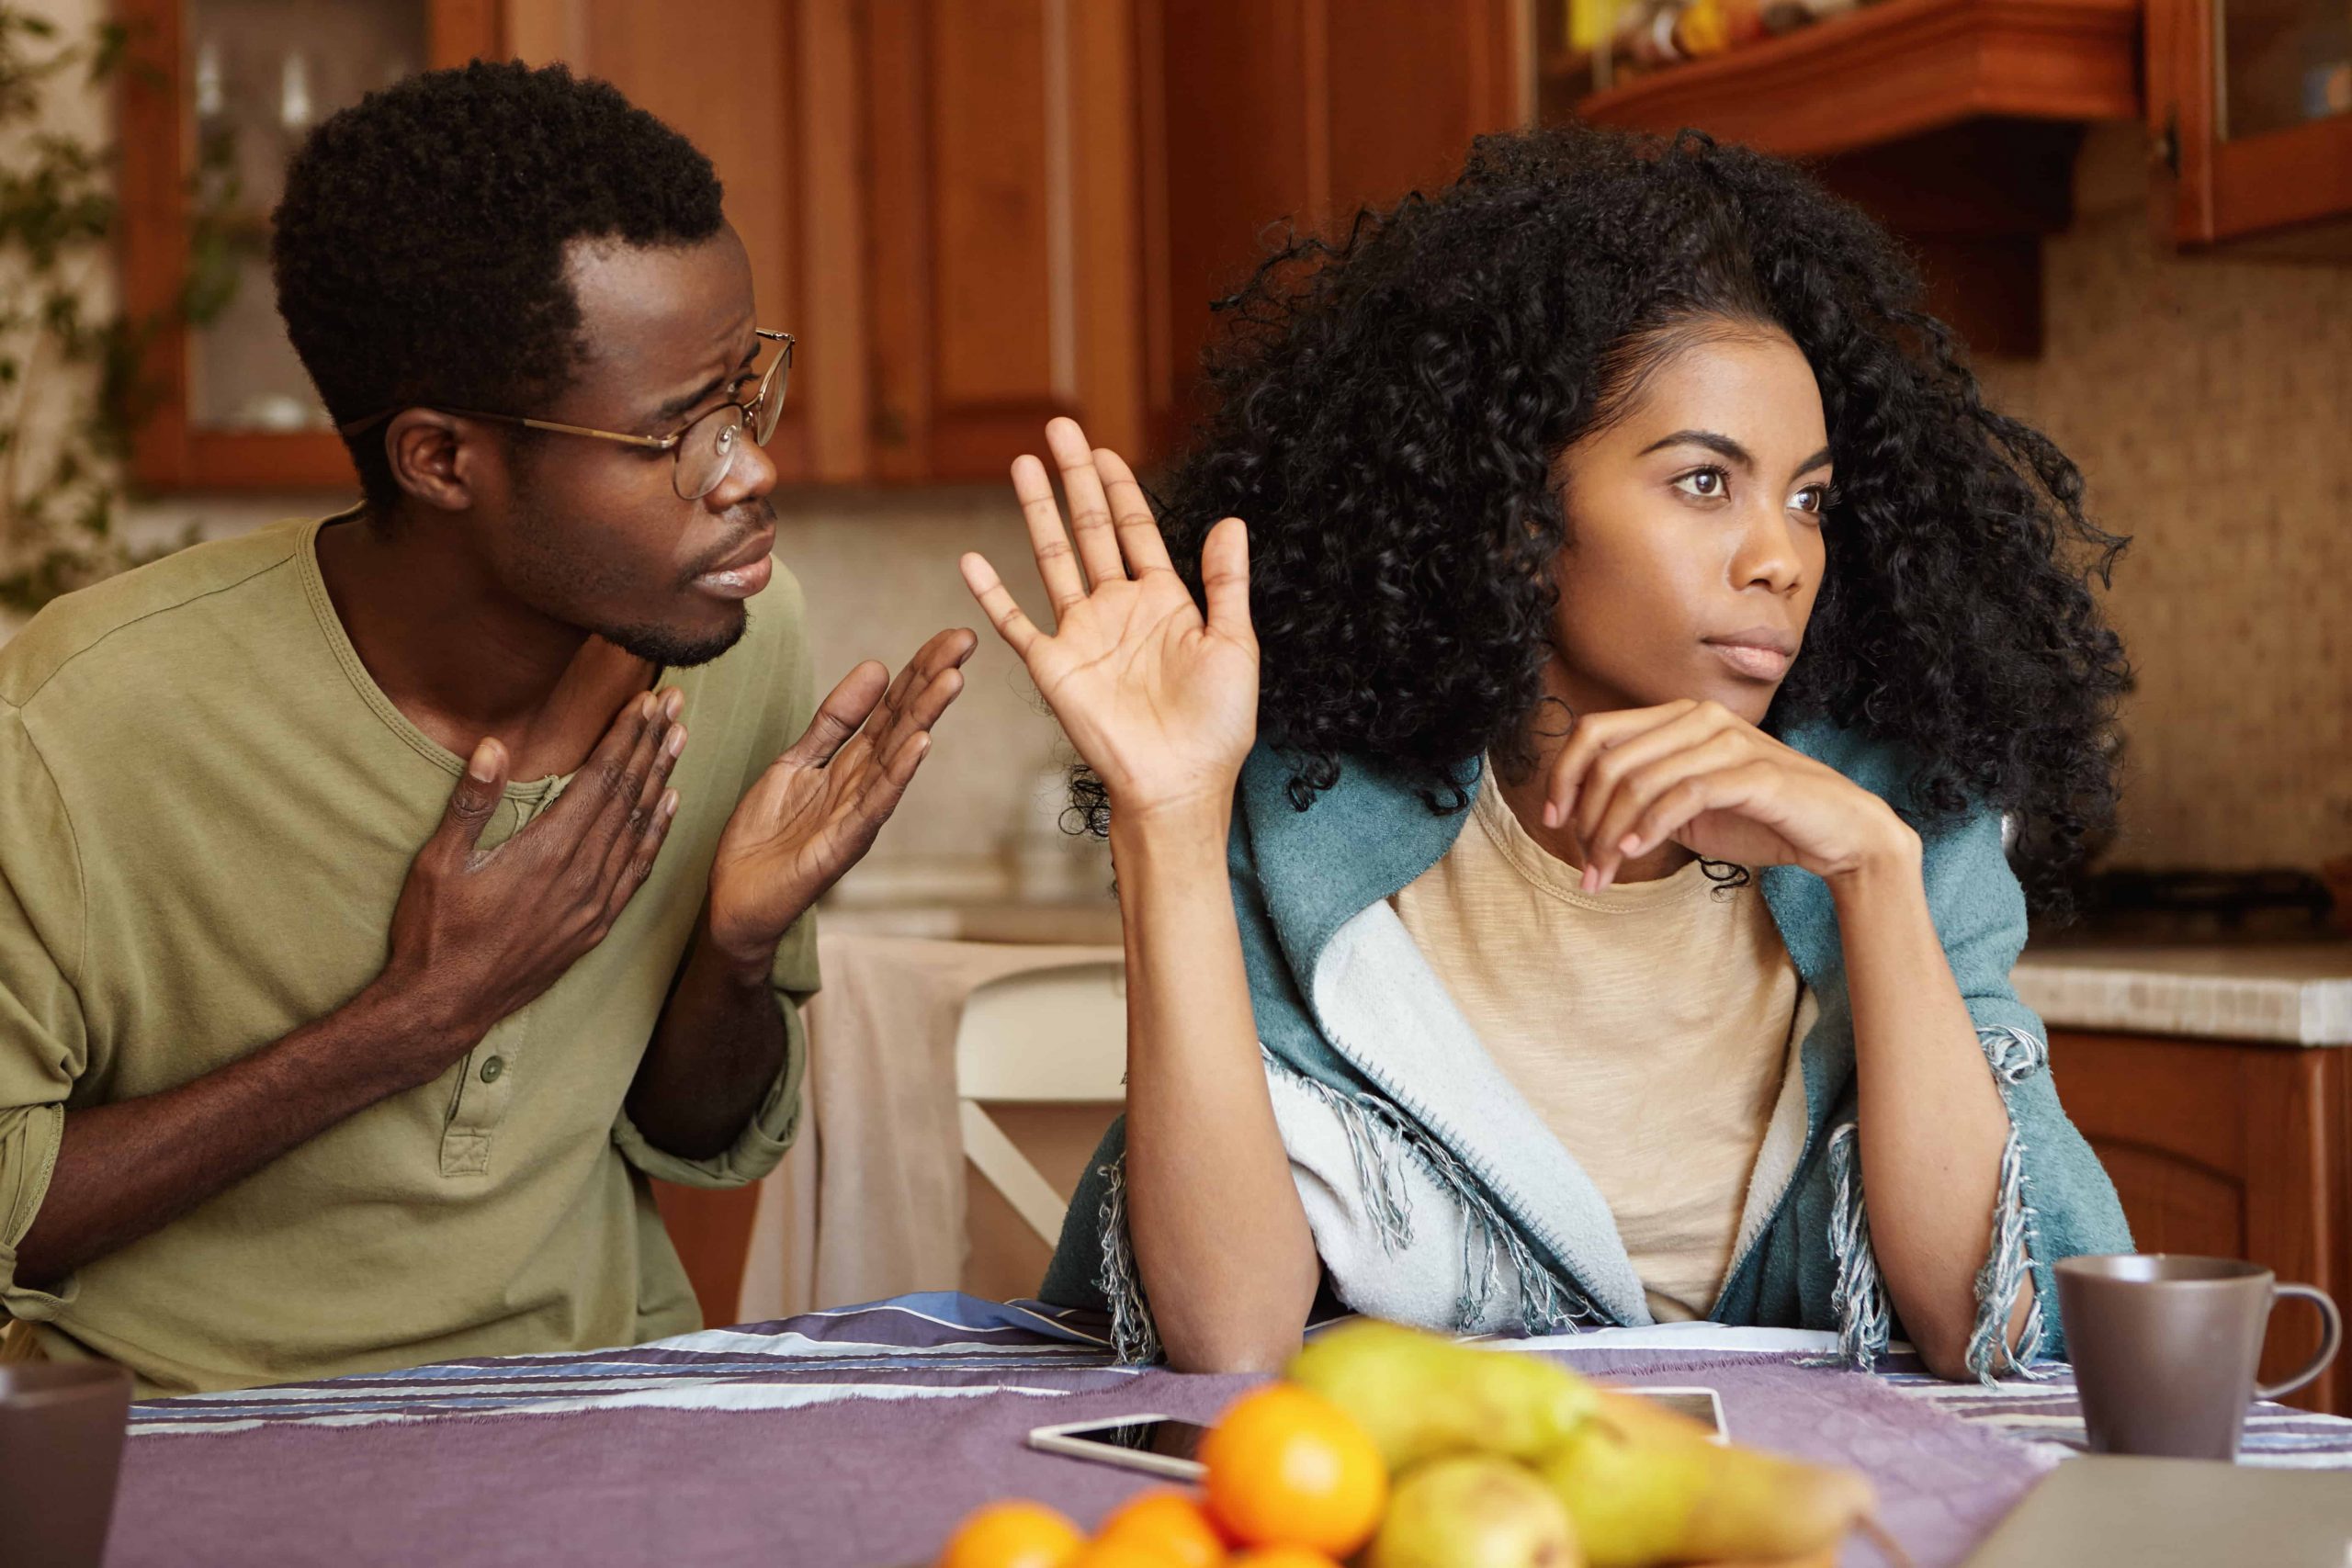 Mariage : comment se relever de l’infidélité de son partenaire ?